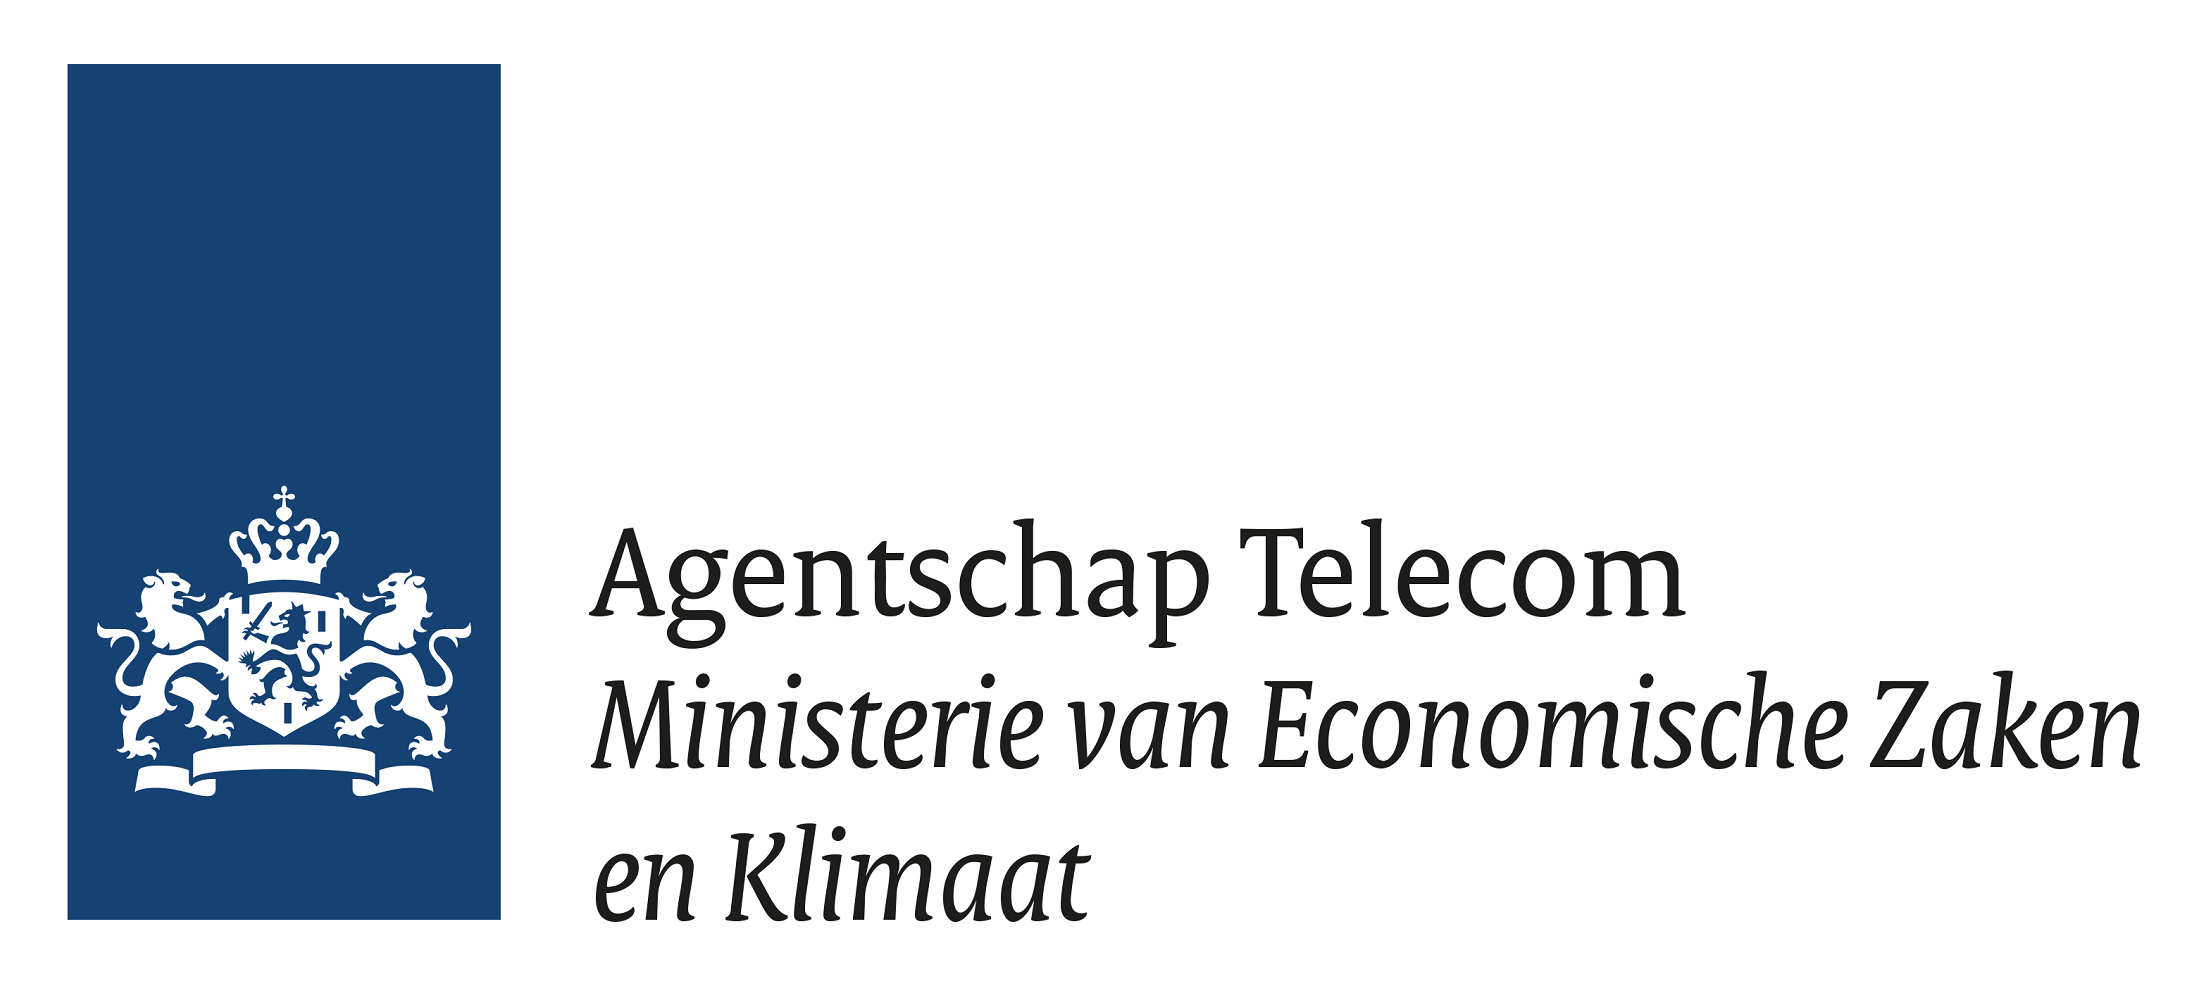 Wij zijn door Agentschap Telecom, van het Ministerie van Economische Zaken en Klimaat, aangewezen als een officiële examinerende instantie voor het basiscertificaat marifonie.